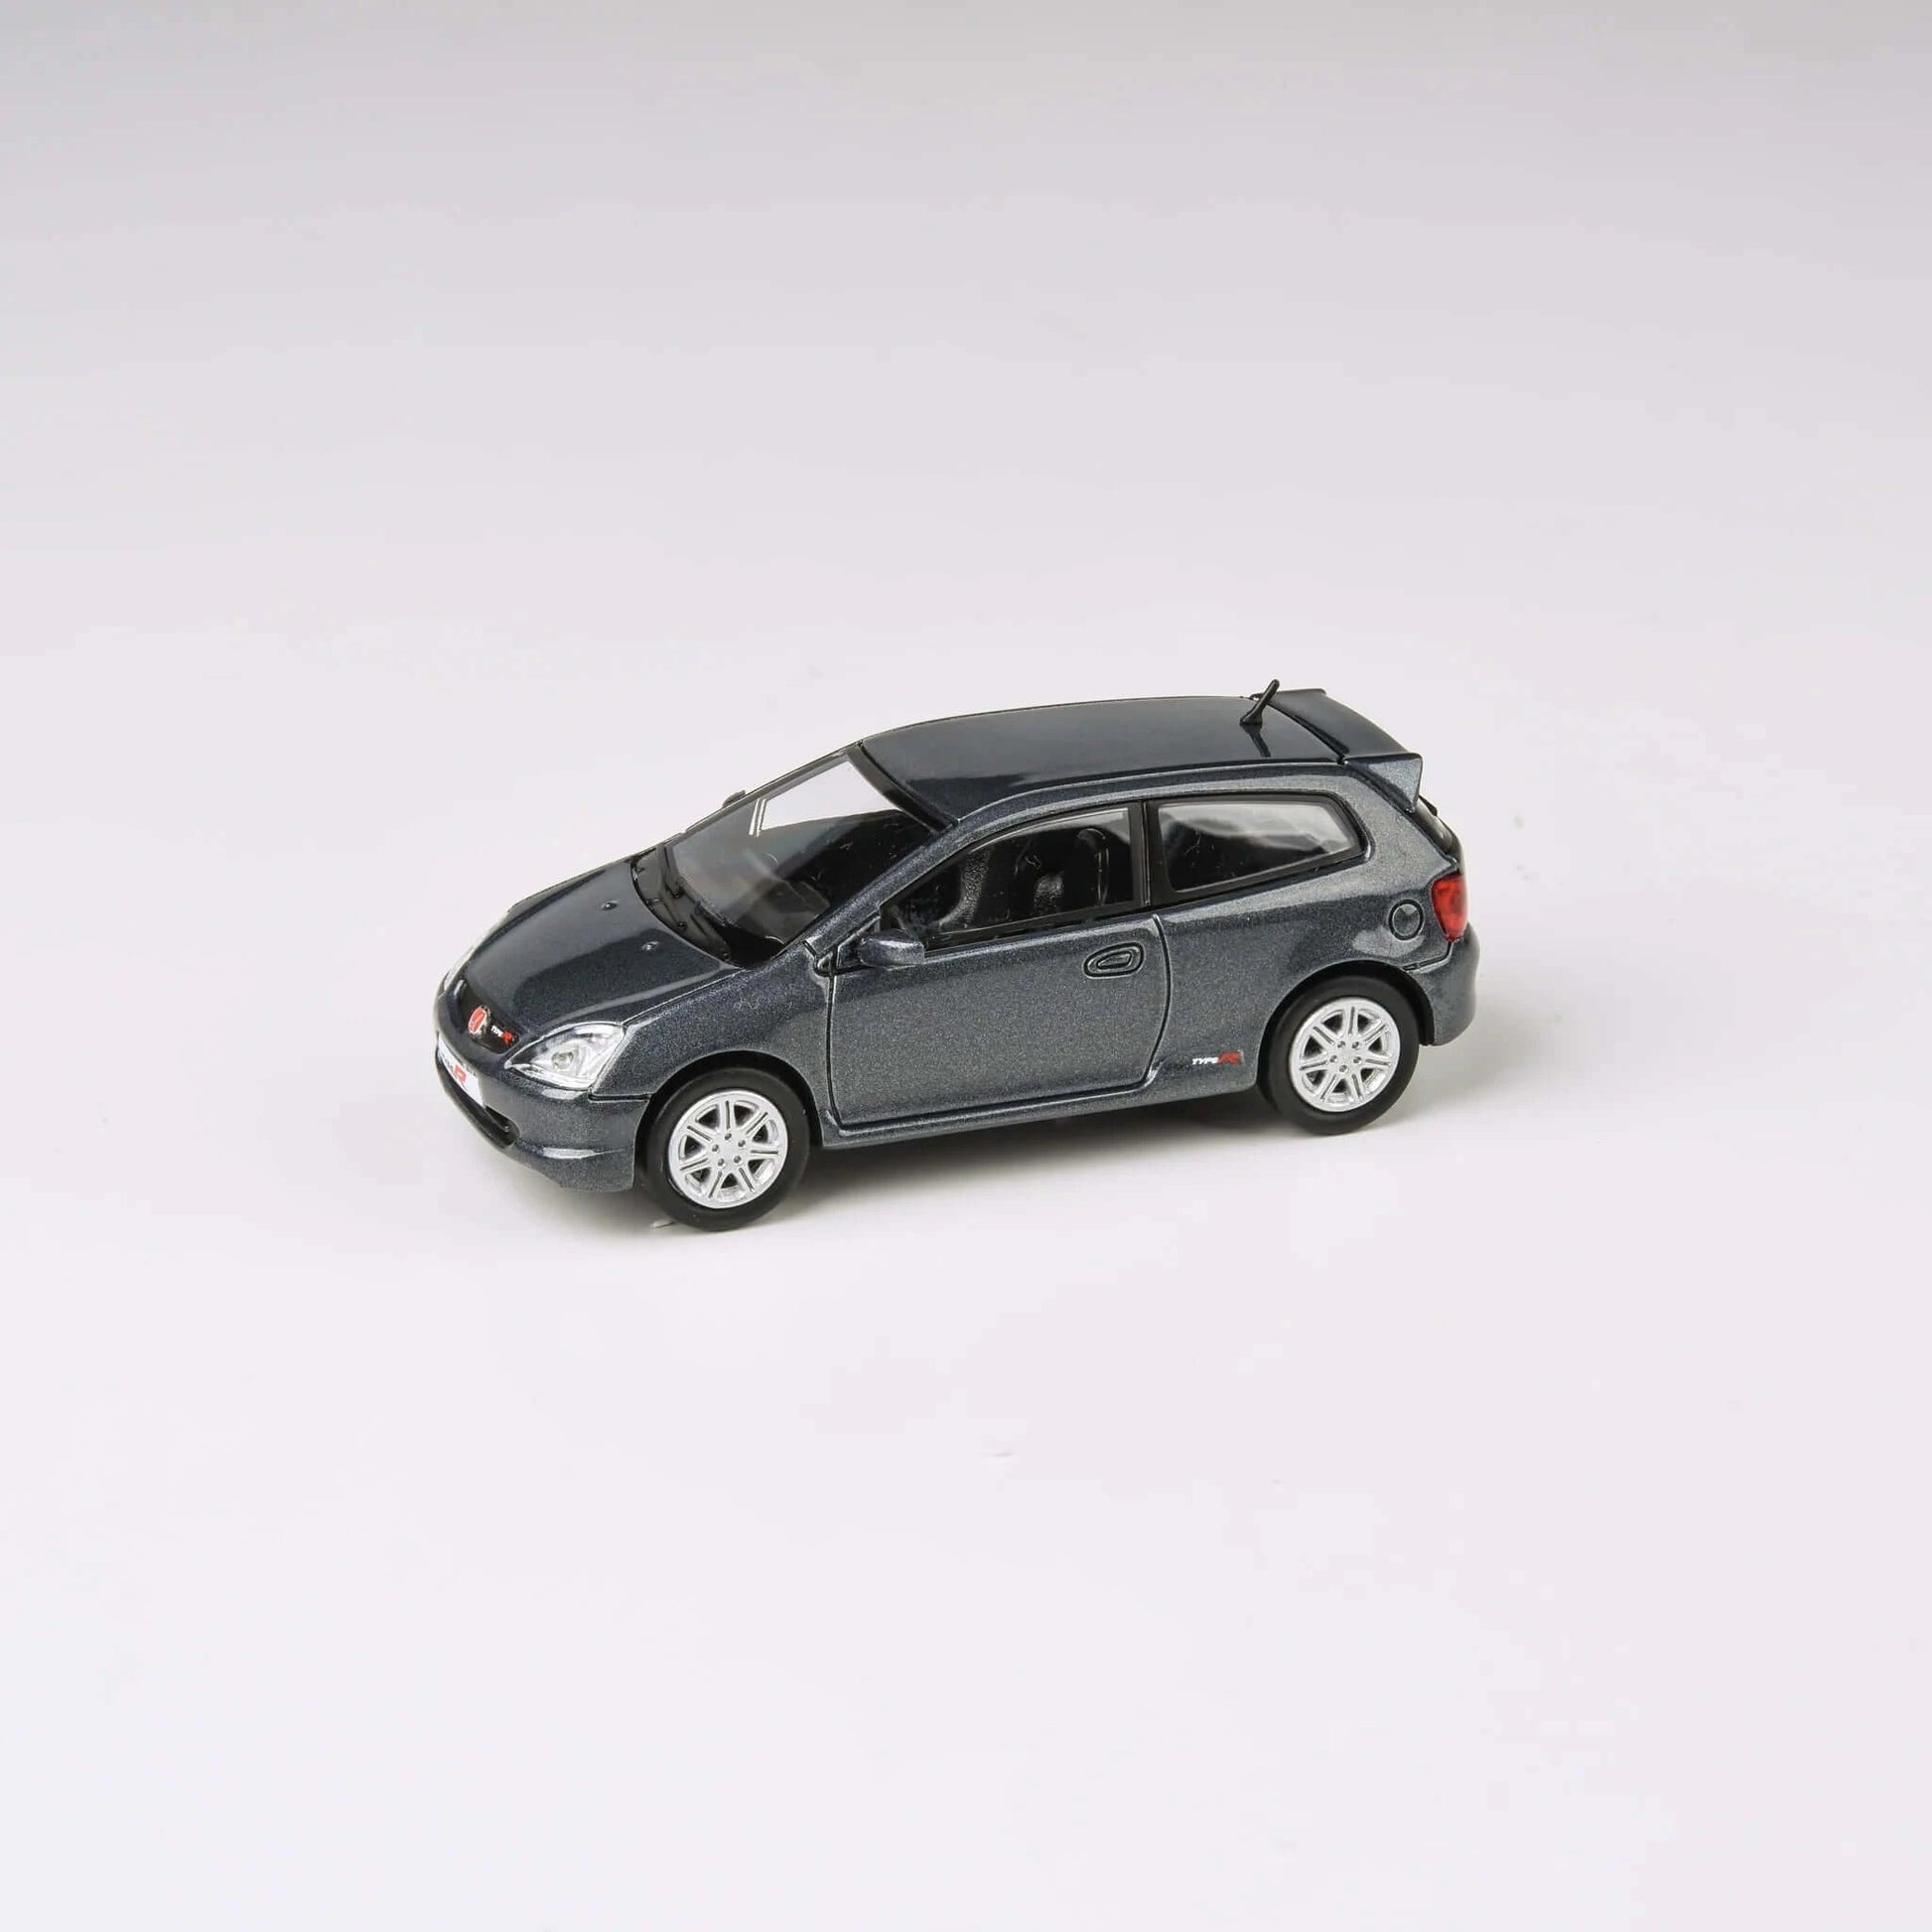 Honda Civic Type-R EP3 2001 Cosmic Grey LHD Para64 1/64 | Motors Miniatures